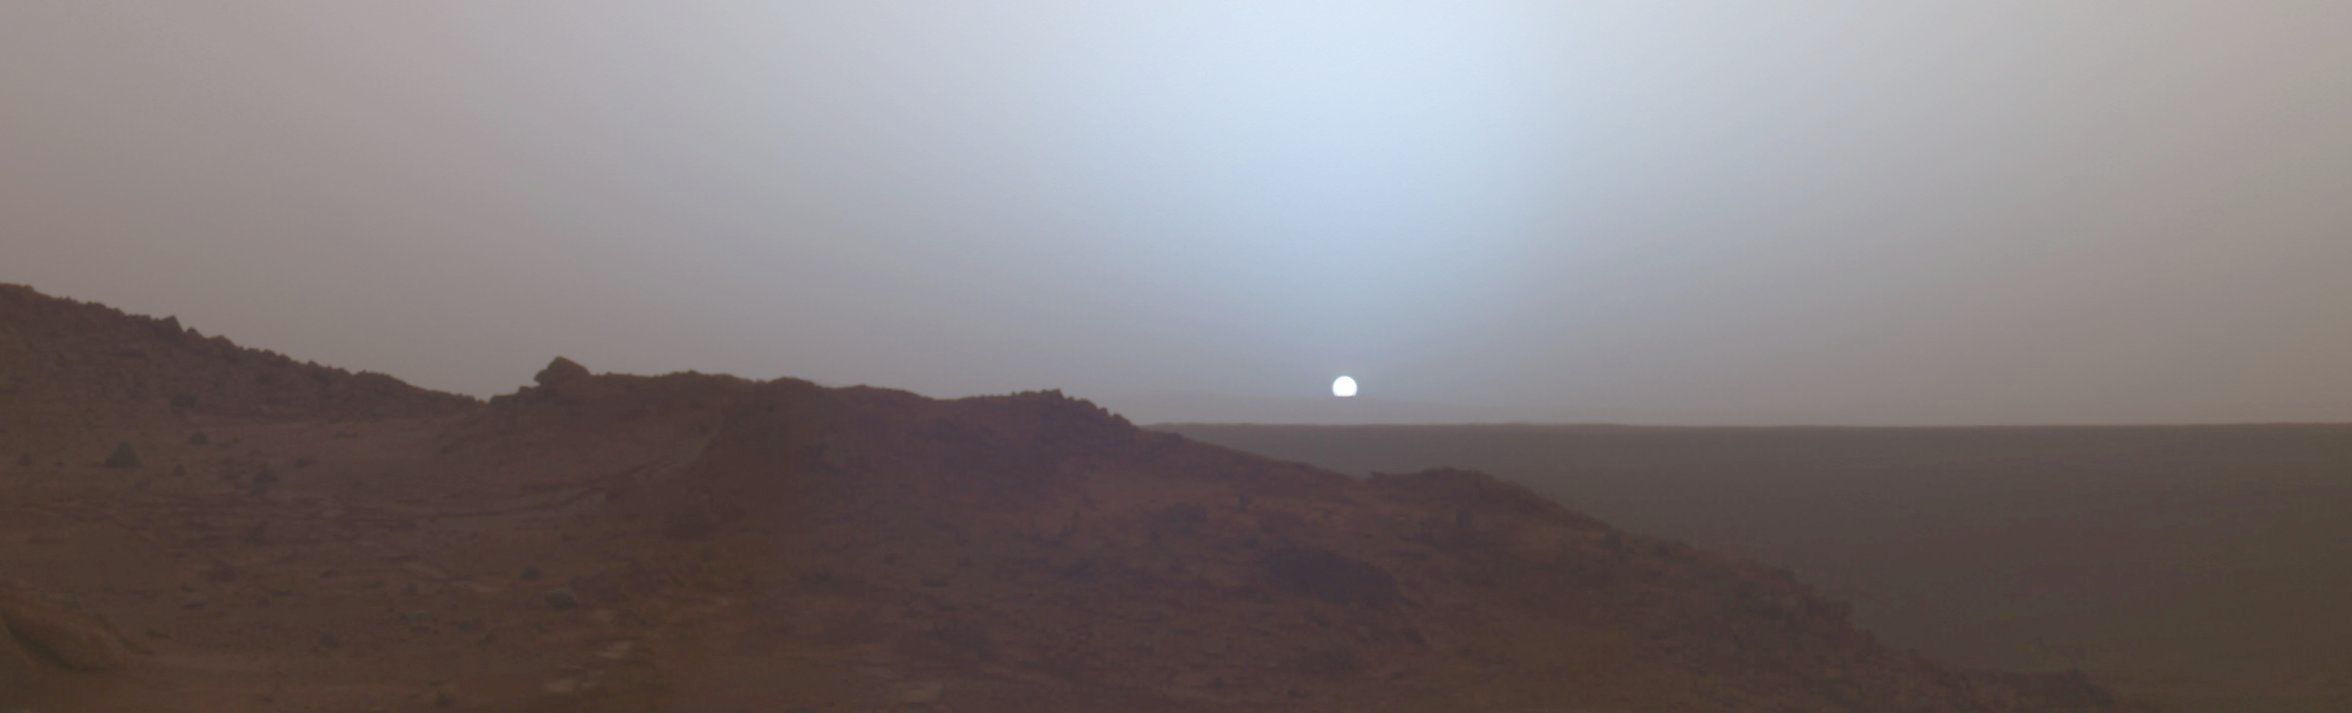 Curiosity снял закат на Марсе - 1